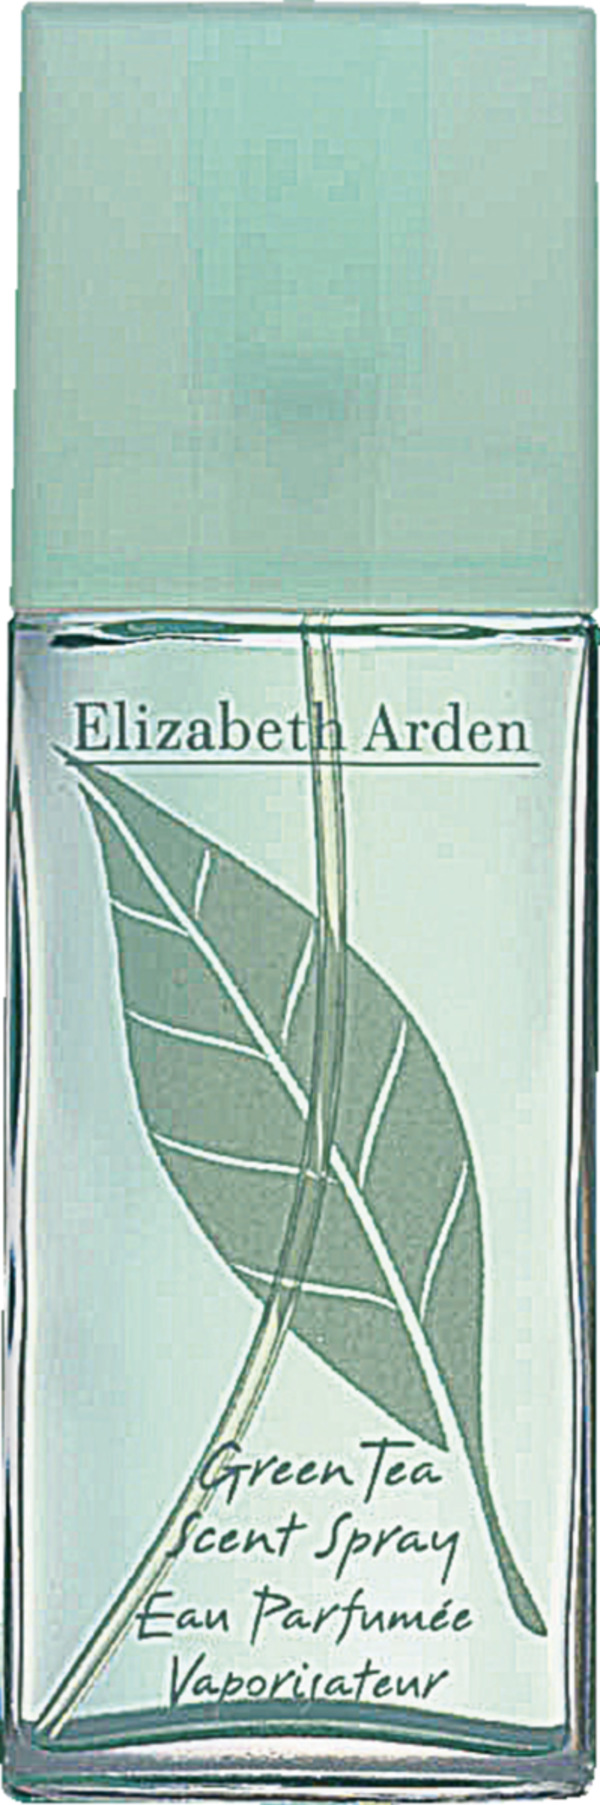 Bild 1 von Elizabeth Arden Green Tea Scent Spray Eau Parfumée Spray